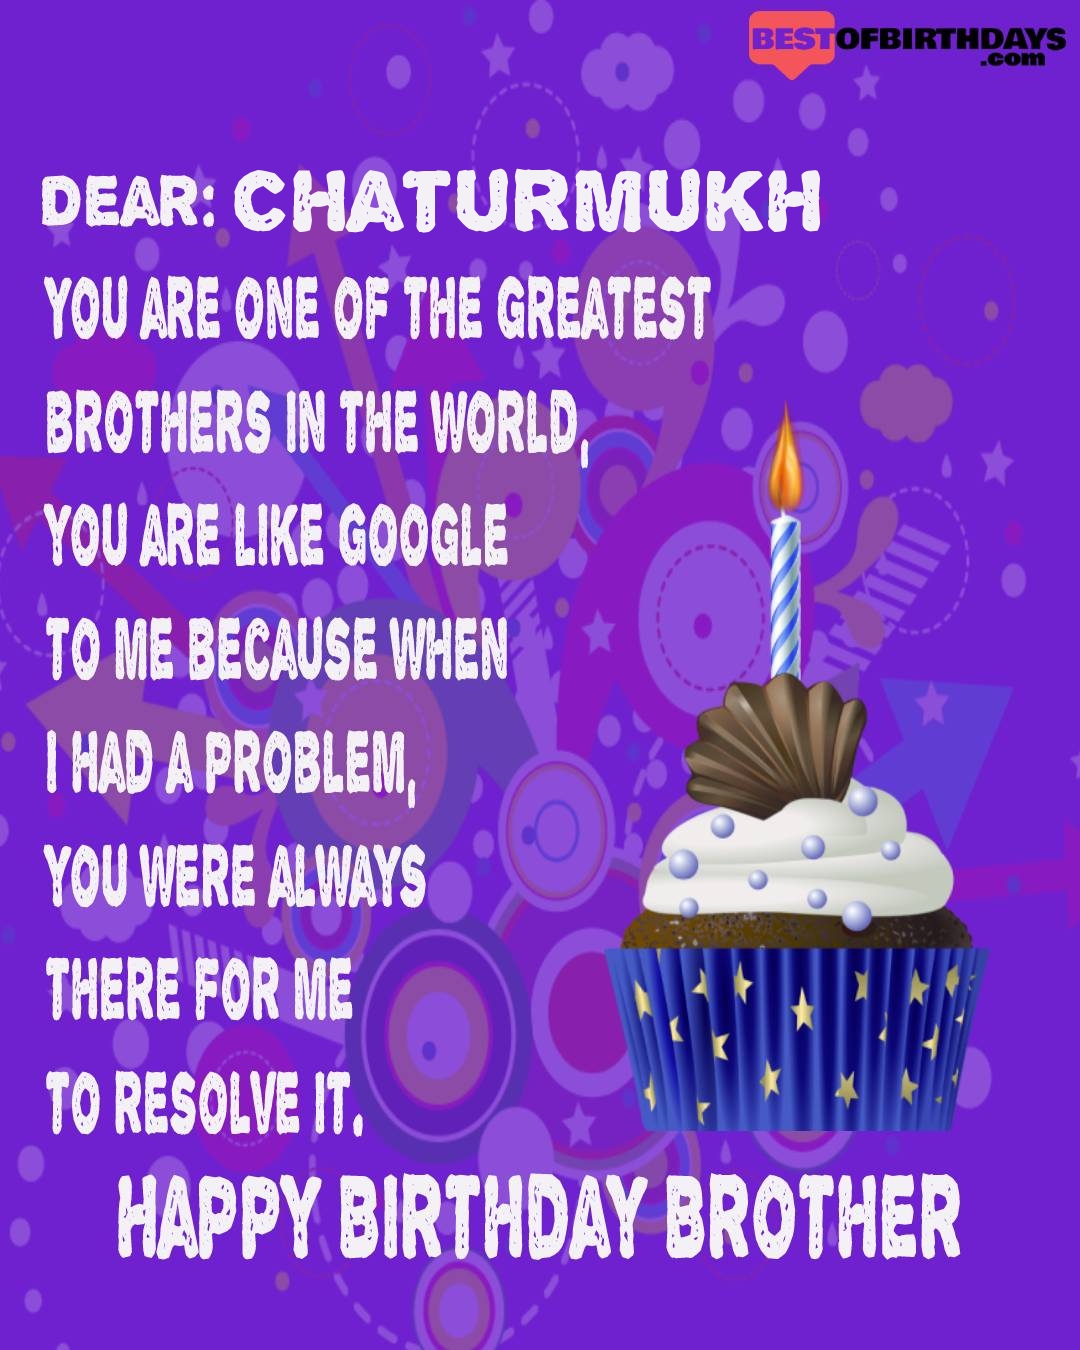 Happy birthday chaturmukh bhai brother bro